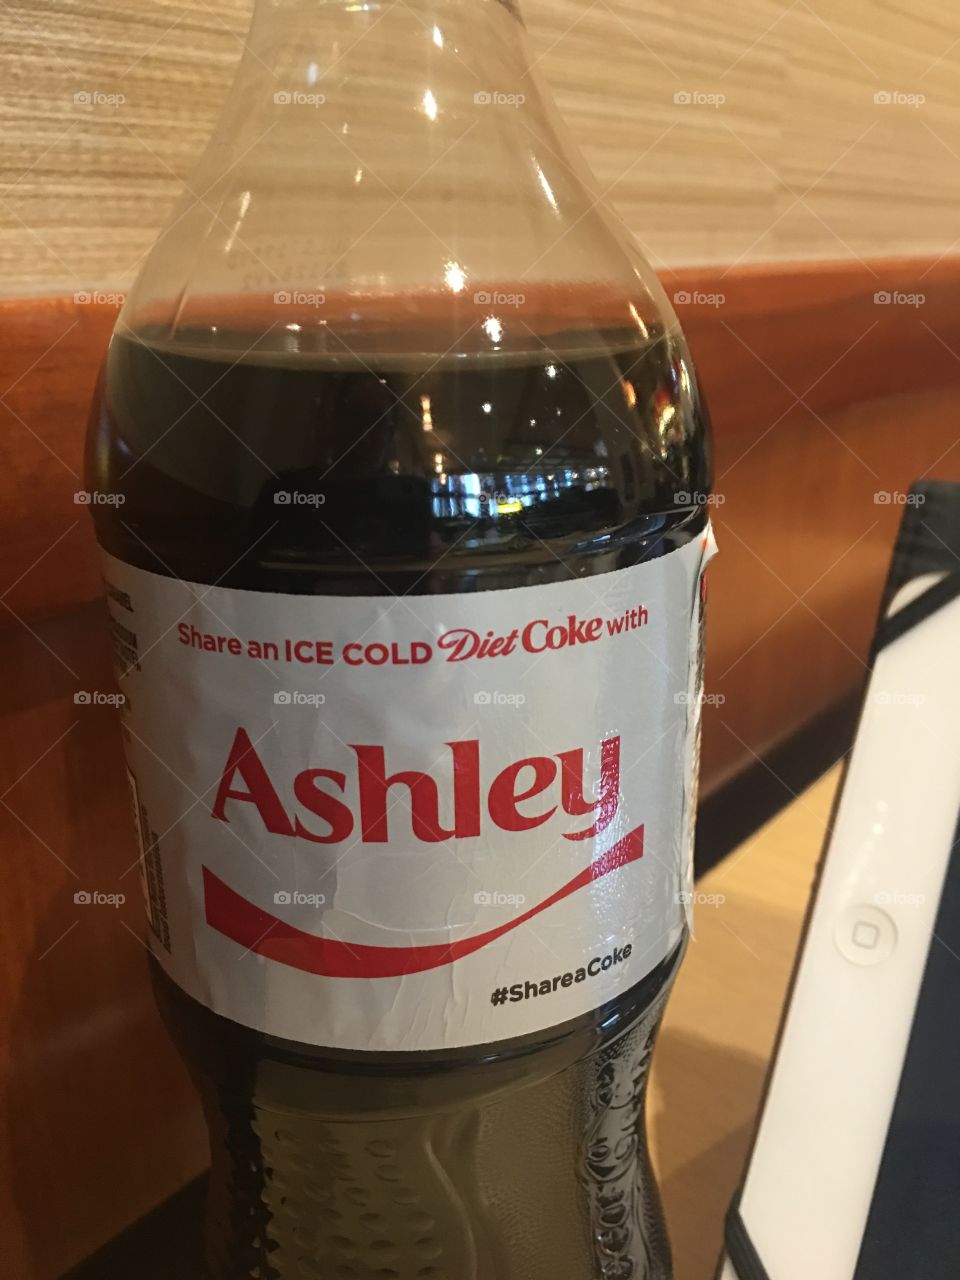 Share a coke 